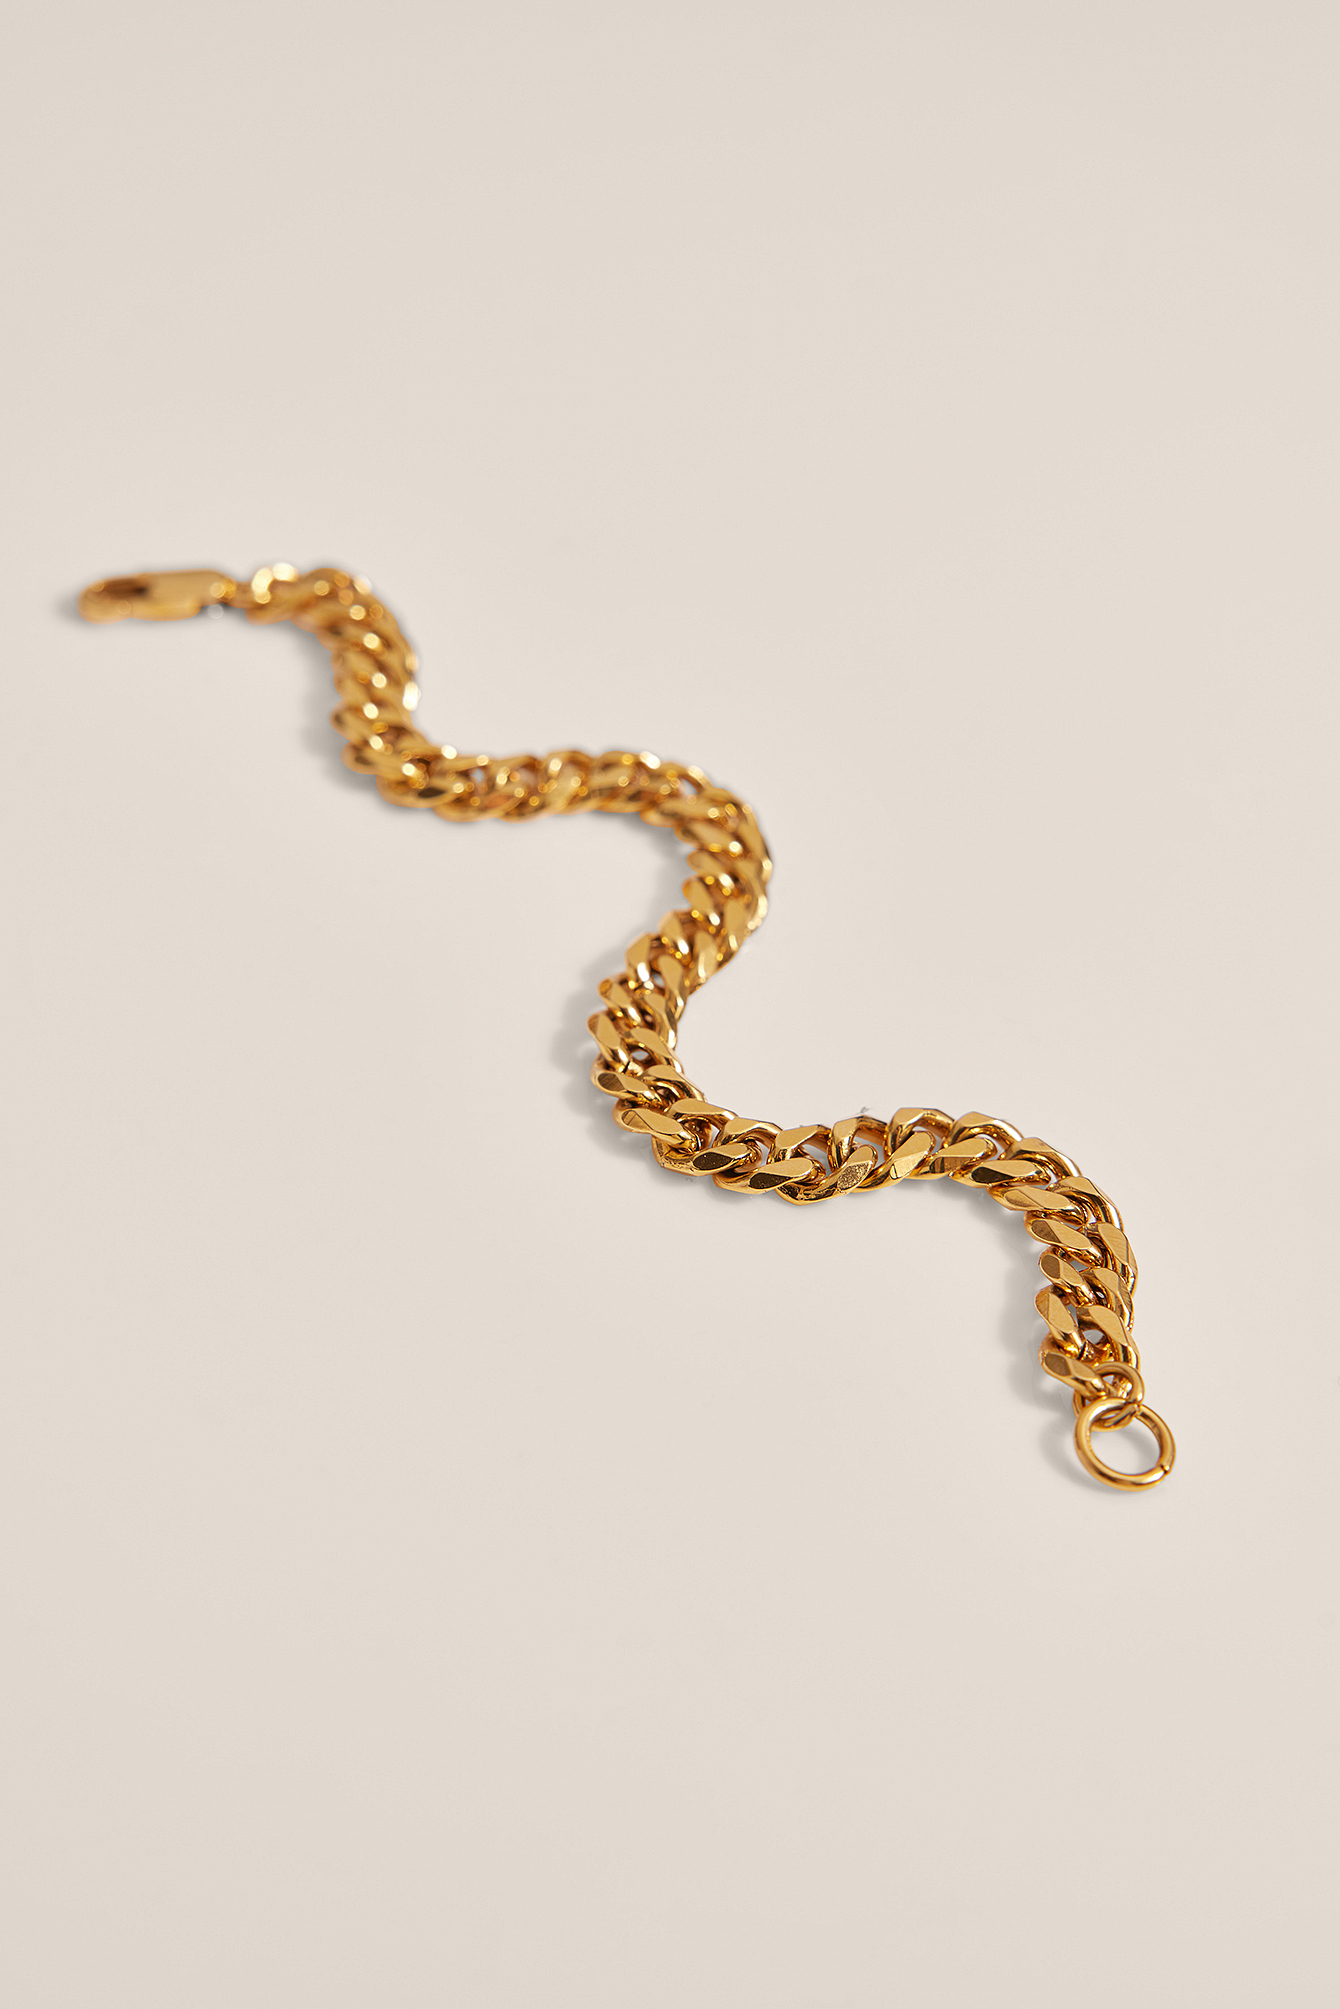 Gold Bracelet chaîne épais en plaqué or